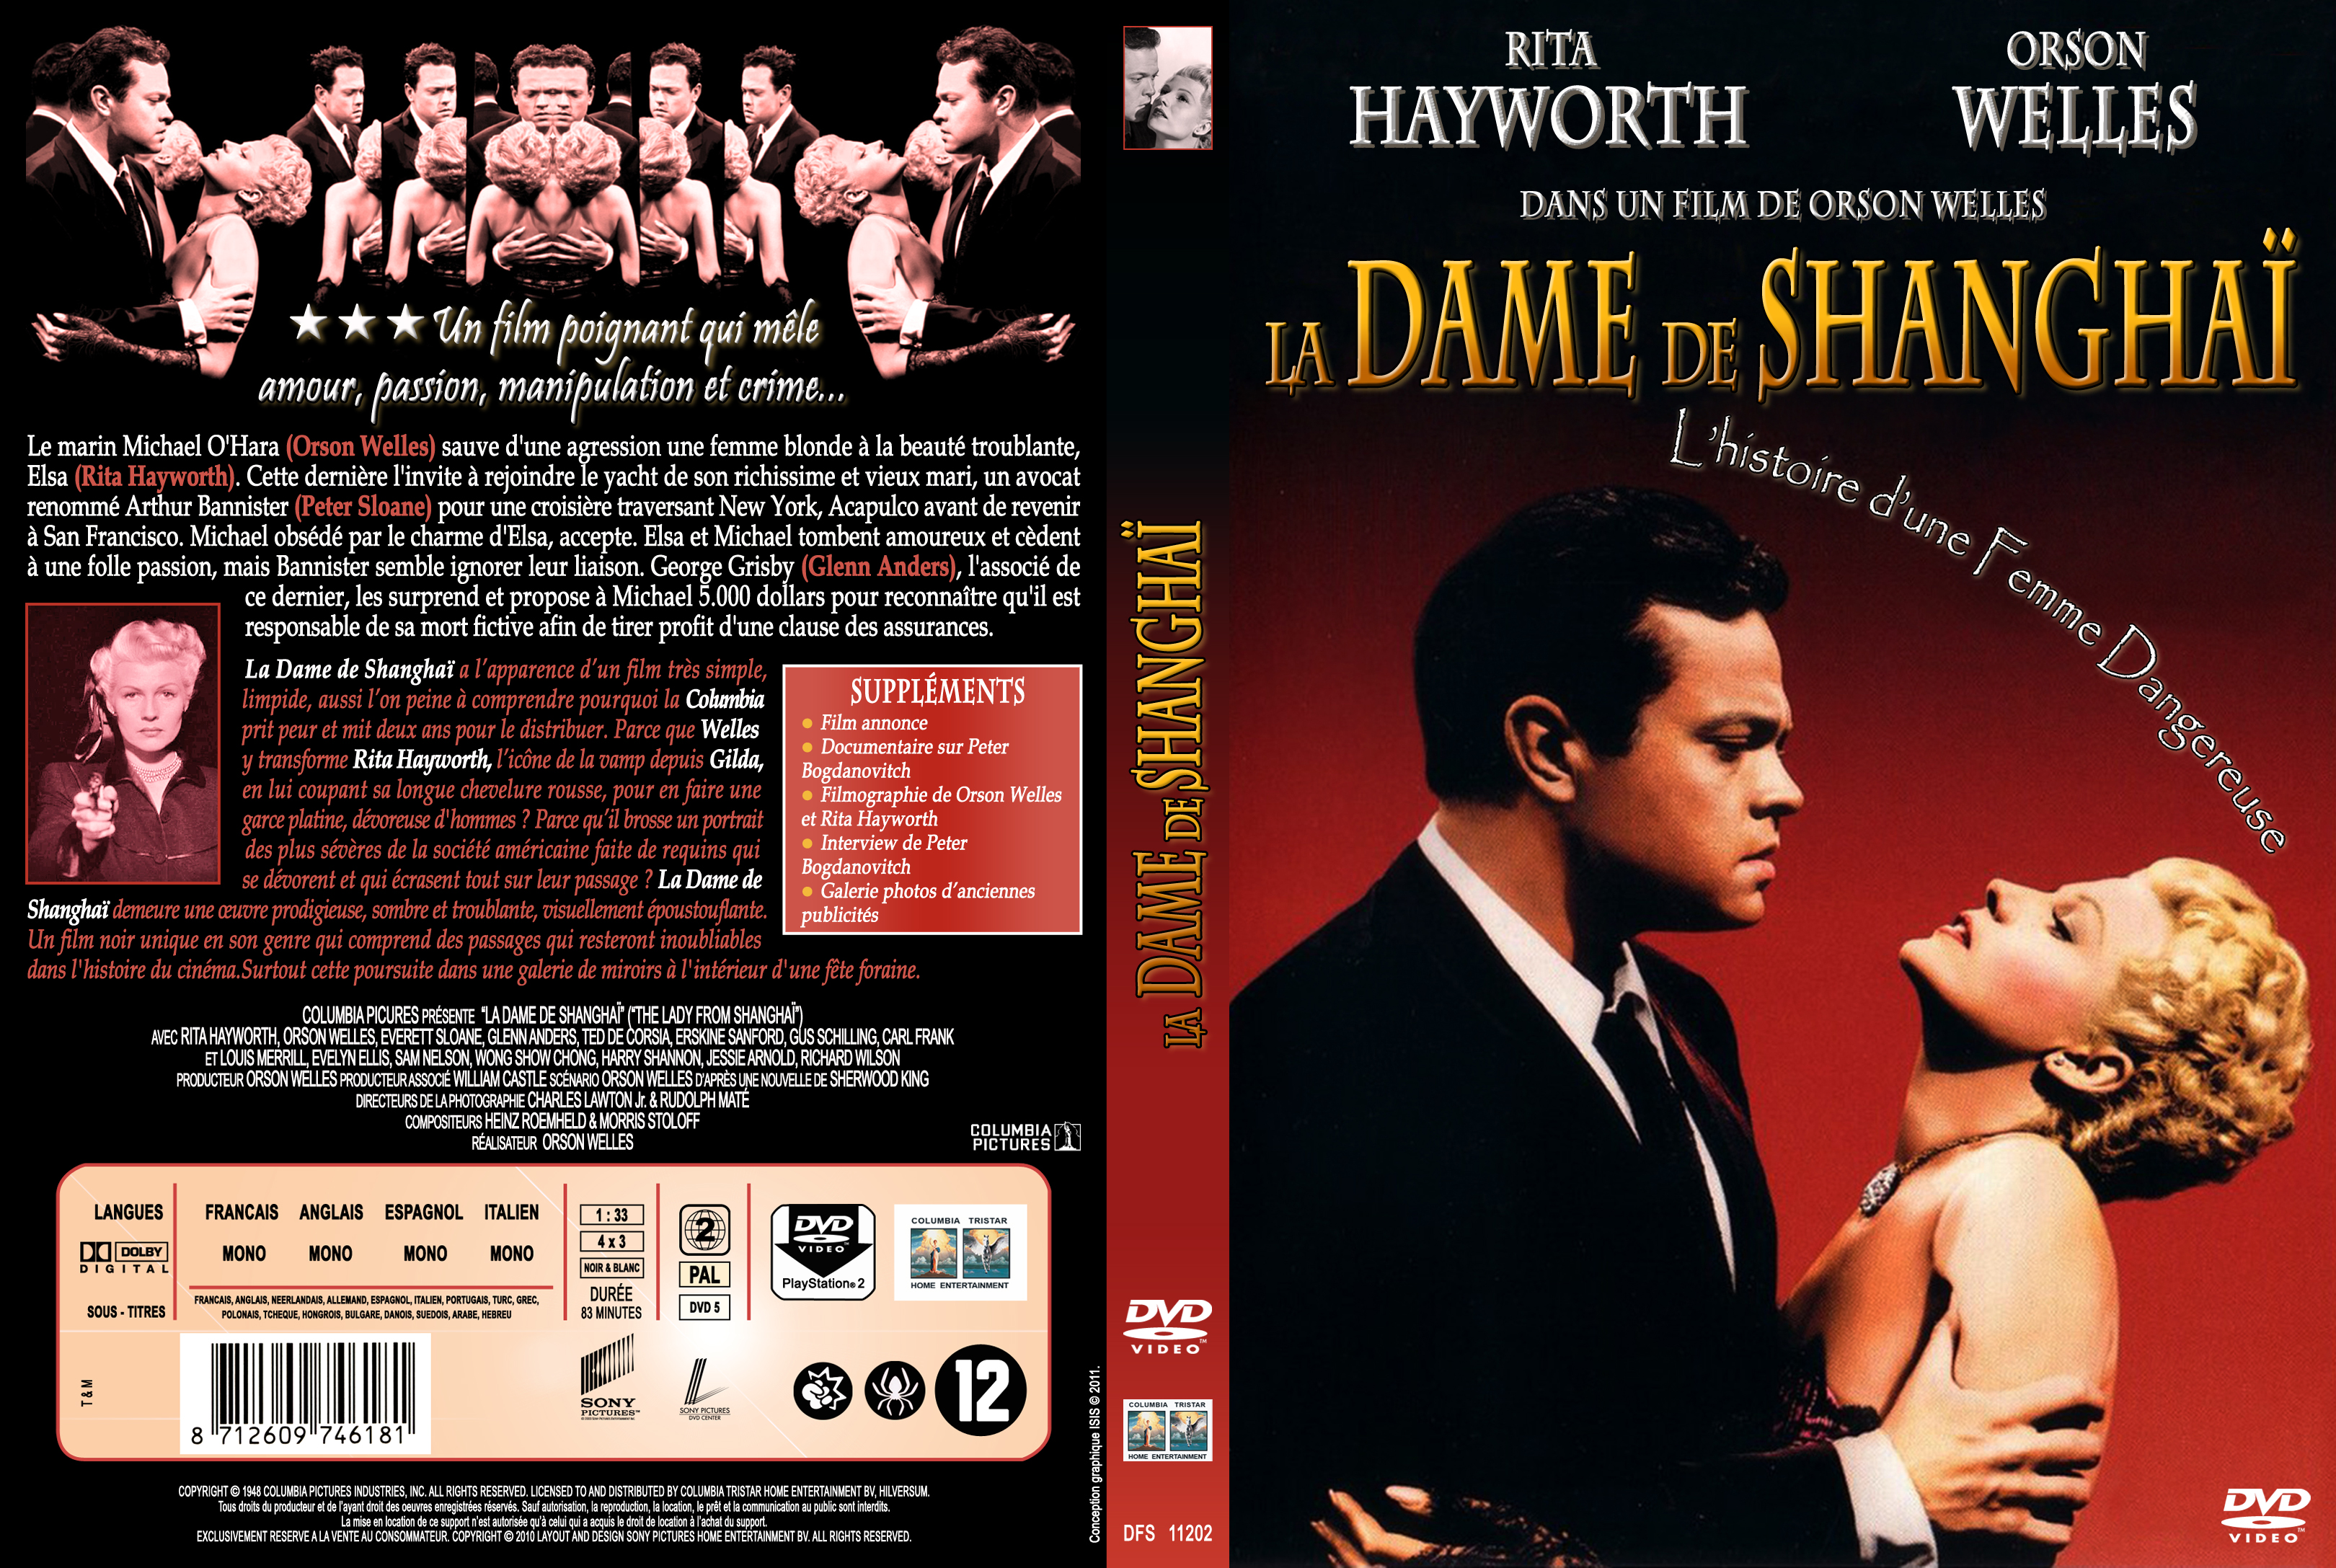 Jaquette DVD La dame de shanghai custom